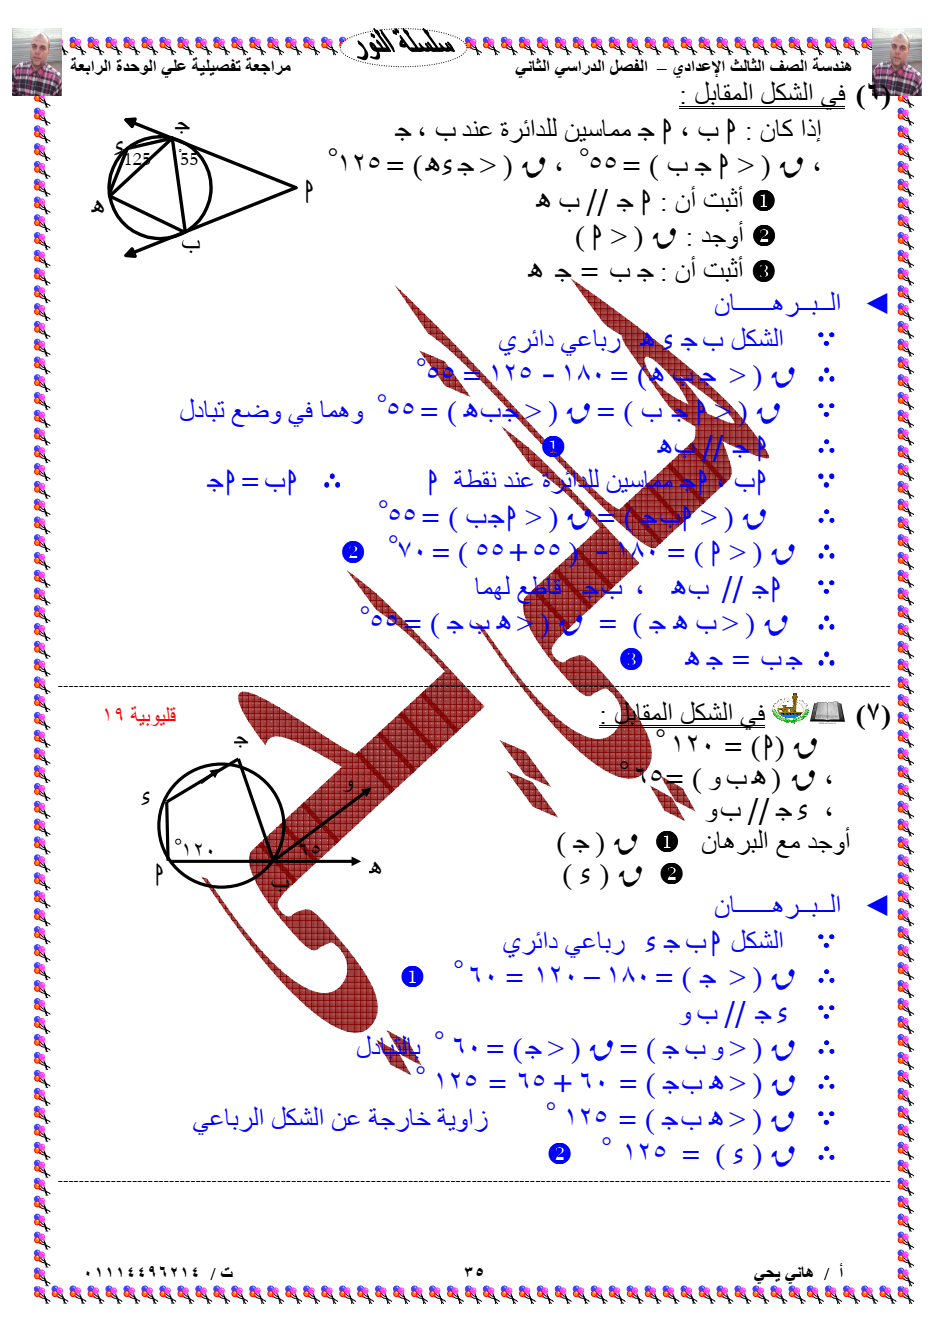 إليكم المراجعة الشاملة في الهندسة للصف الثالث الإعدادي الترم الثاني ملف PDF